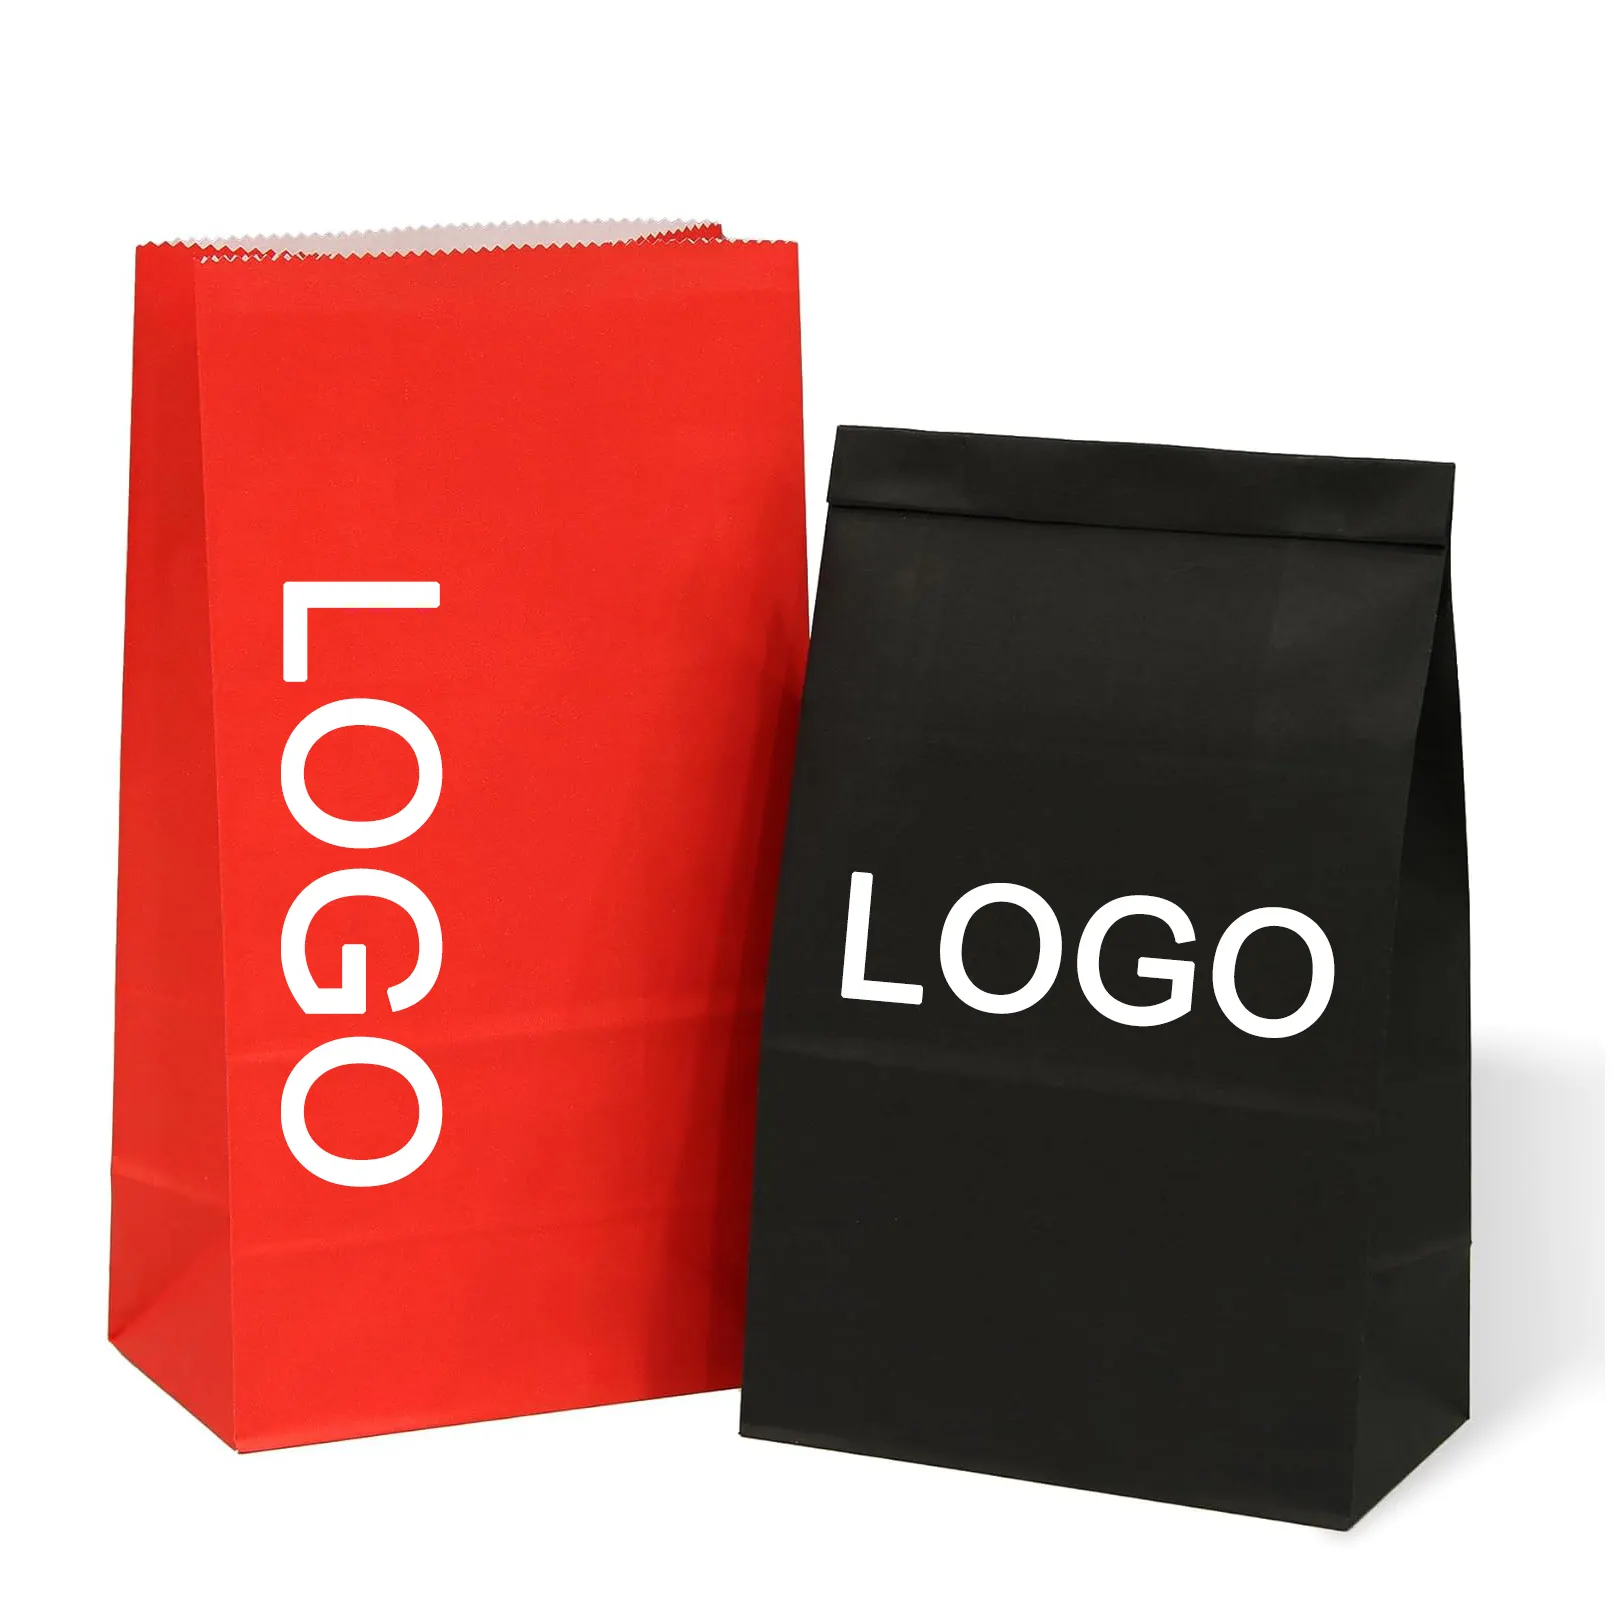 Çevre dostu kişiselleştirin özel logo kırmızı siyah renk hediye wrap çerezler ekmekler gres dayanıklı kağıt ekmek loaf çanta kraft gıda